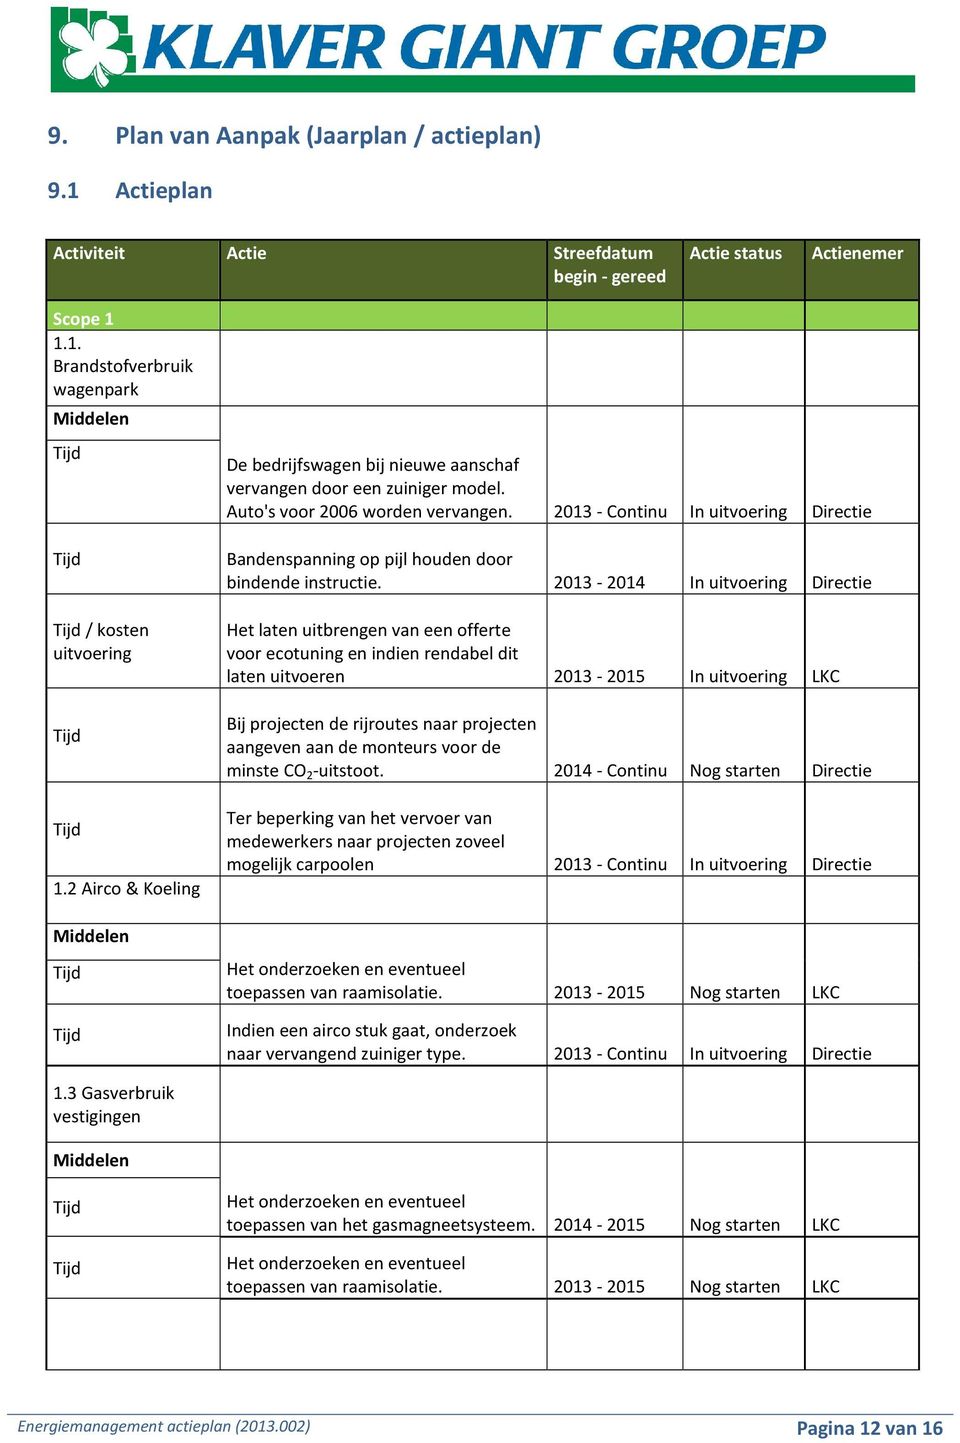 2013-2014 In uitvoering Directie Het laten uitbrengen van een offerte voor ecotuning en indien rendabel dit laten uitvoeren 2013-2015 In uitvoering LKC 1.